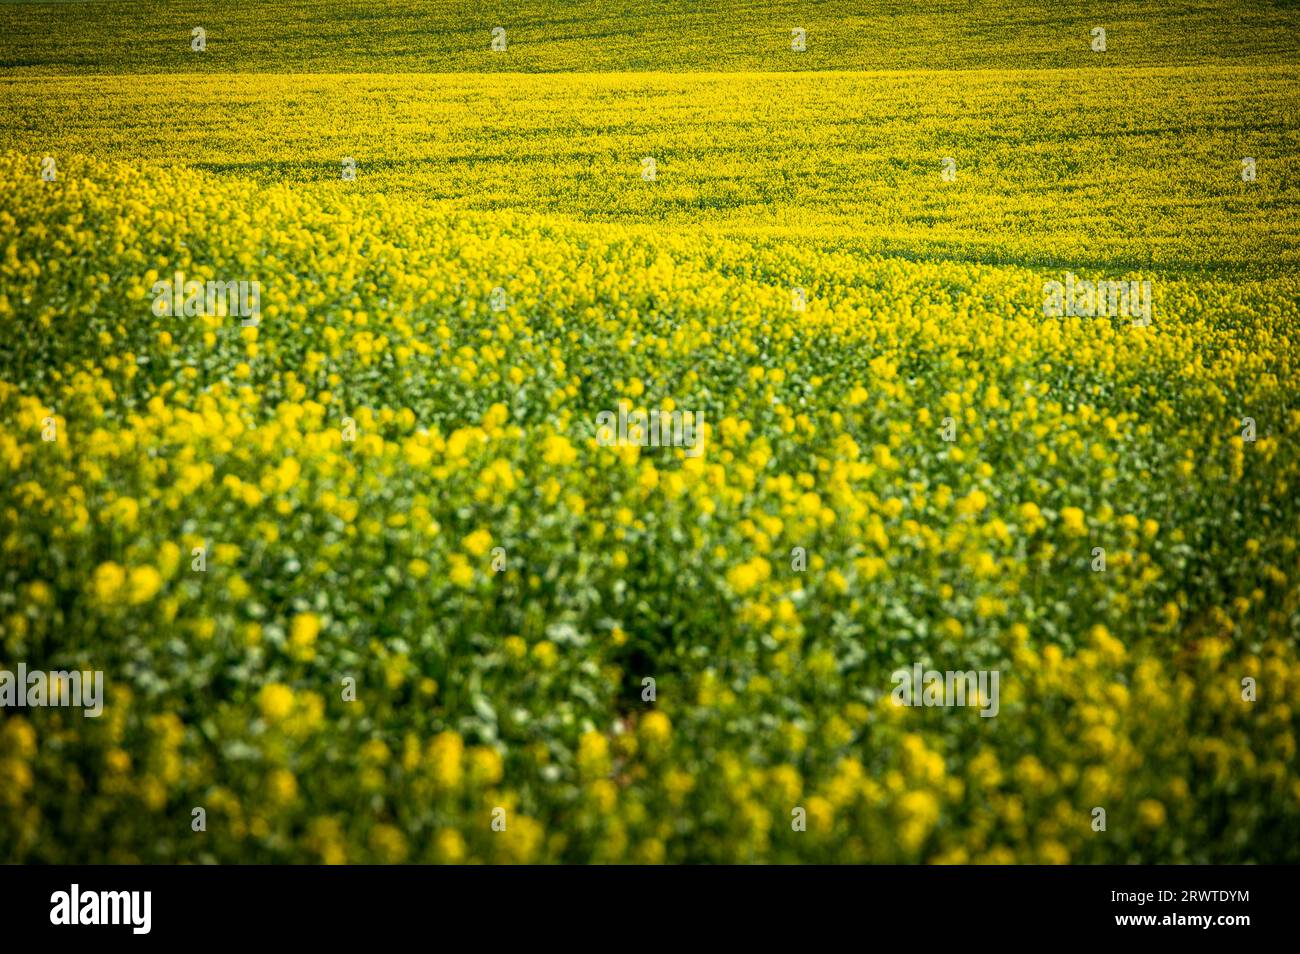 Arte della natura: Campi di colza e grano in piena fioritura, sullo splendido cielo blu in un paesaggio agricolo rurale Foto Stock